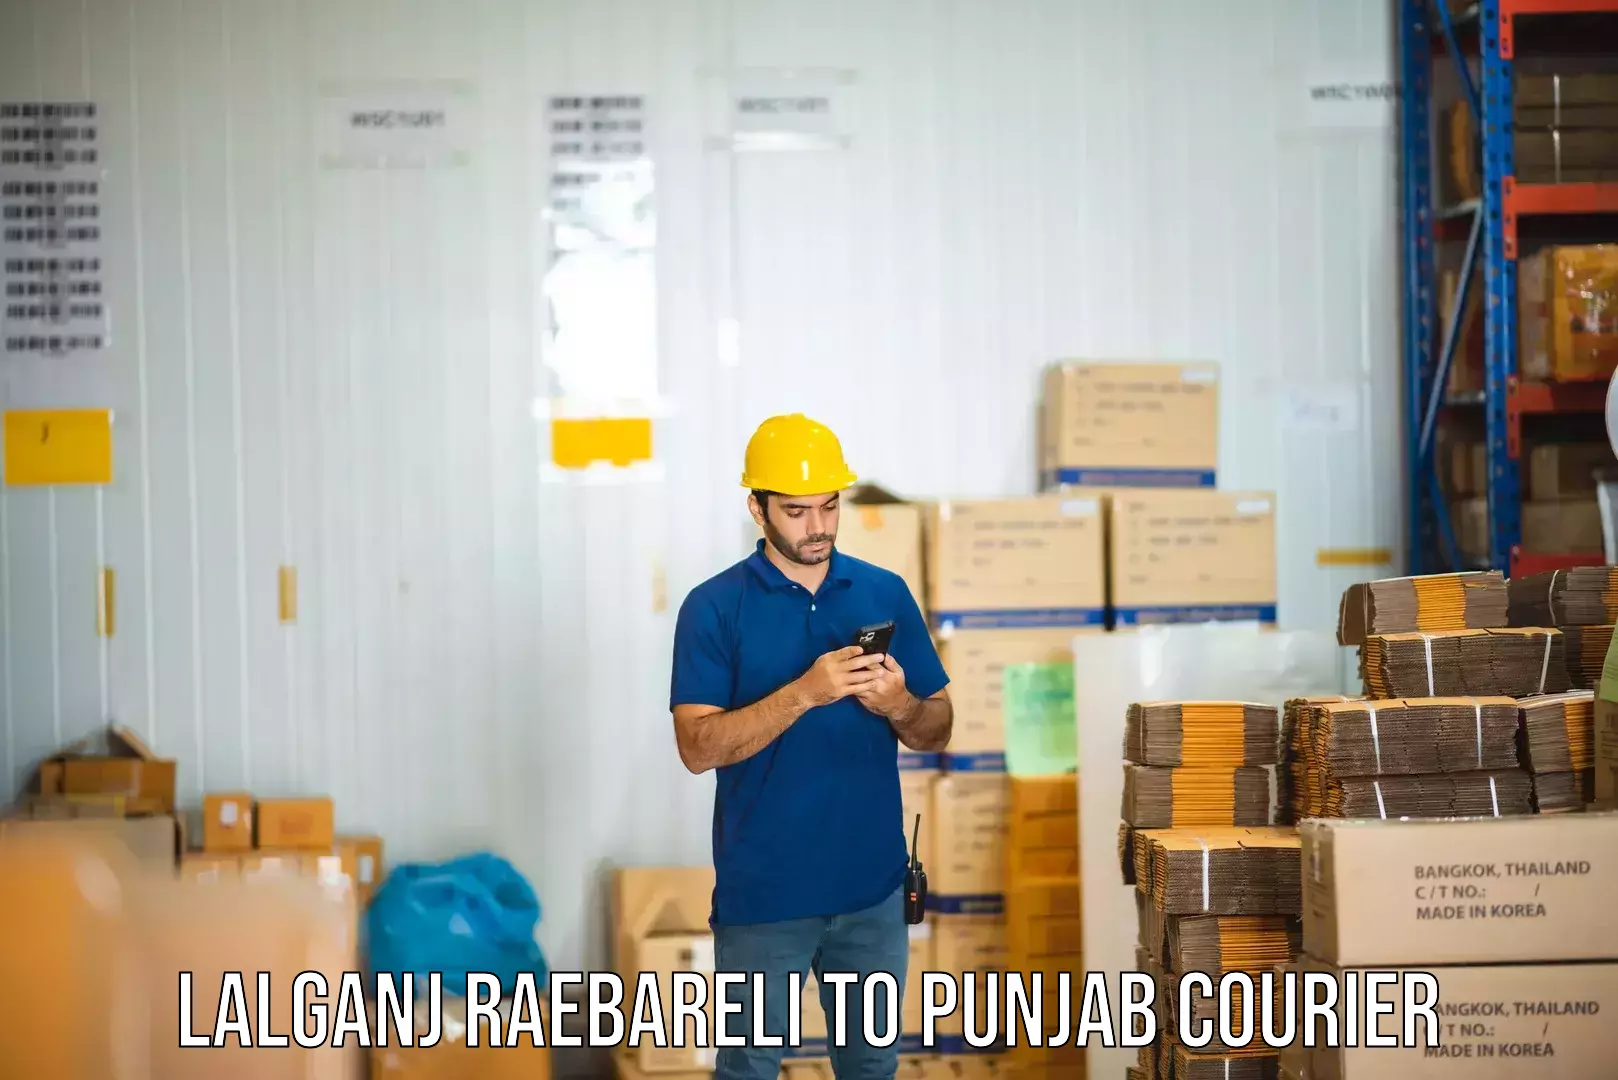 Courier service partnerships Lalganj Raebareli to Punjab